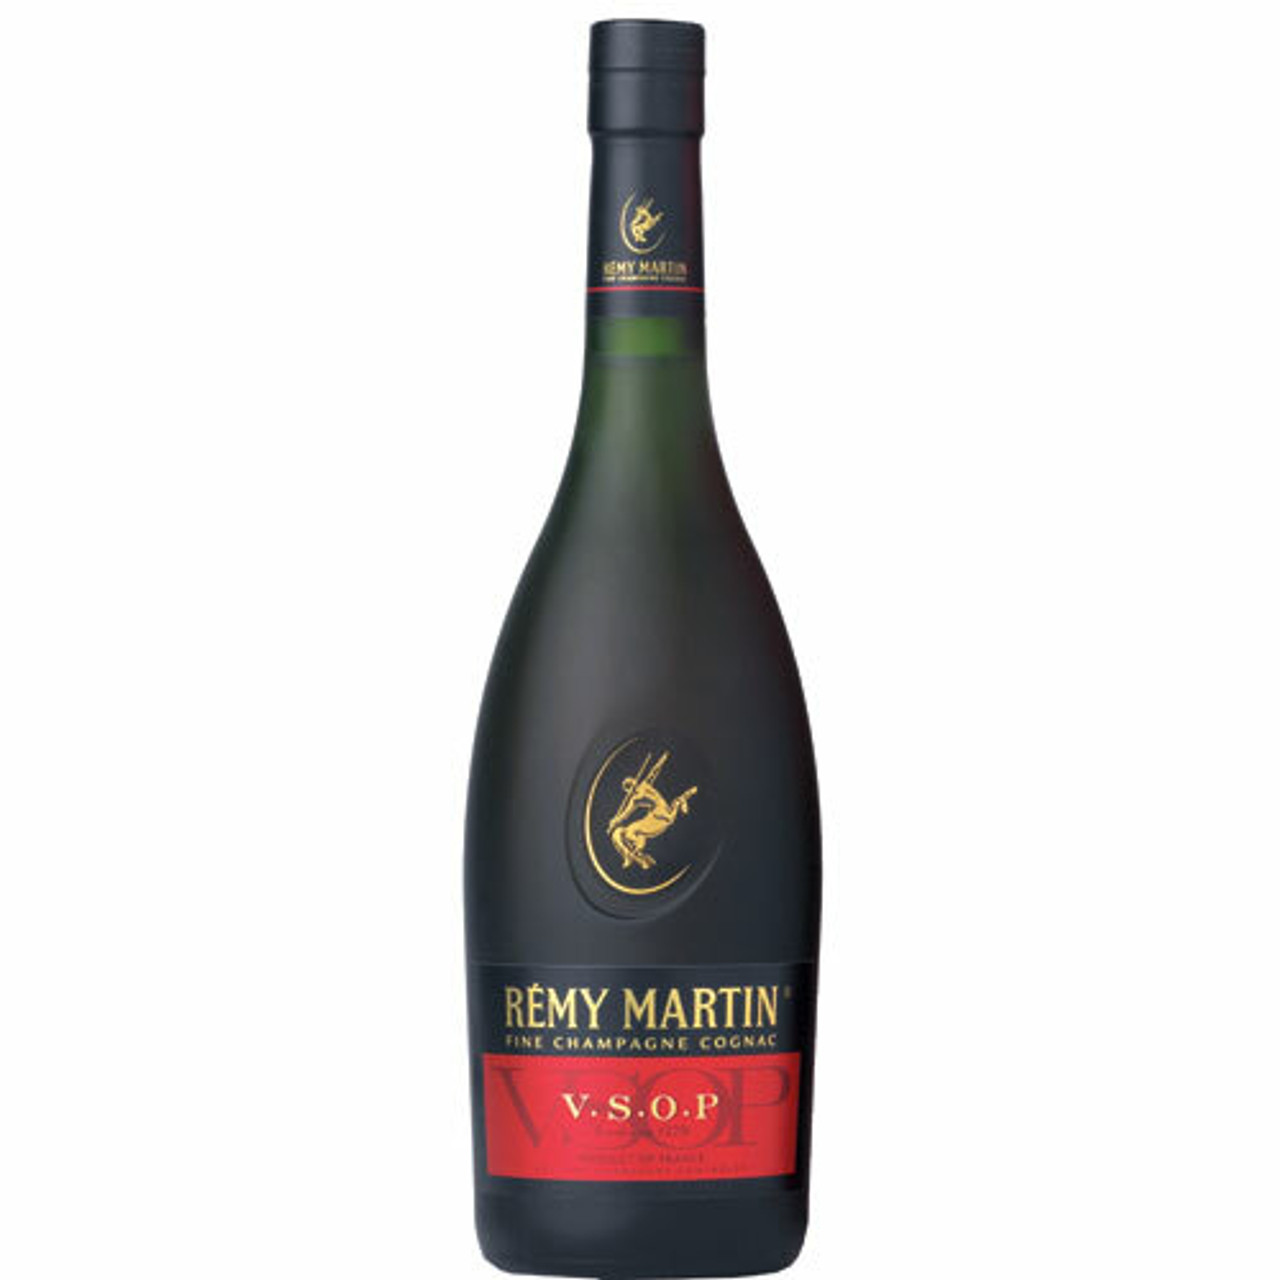 Grande Champagne - Remy Martin Cognac